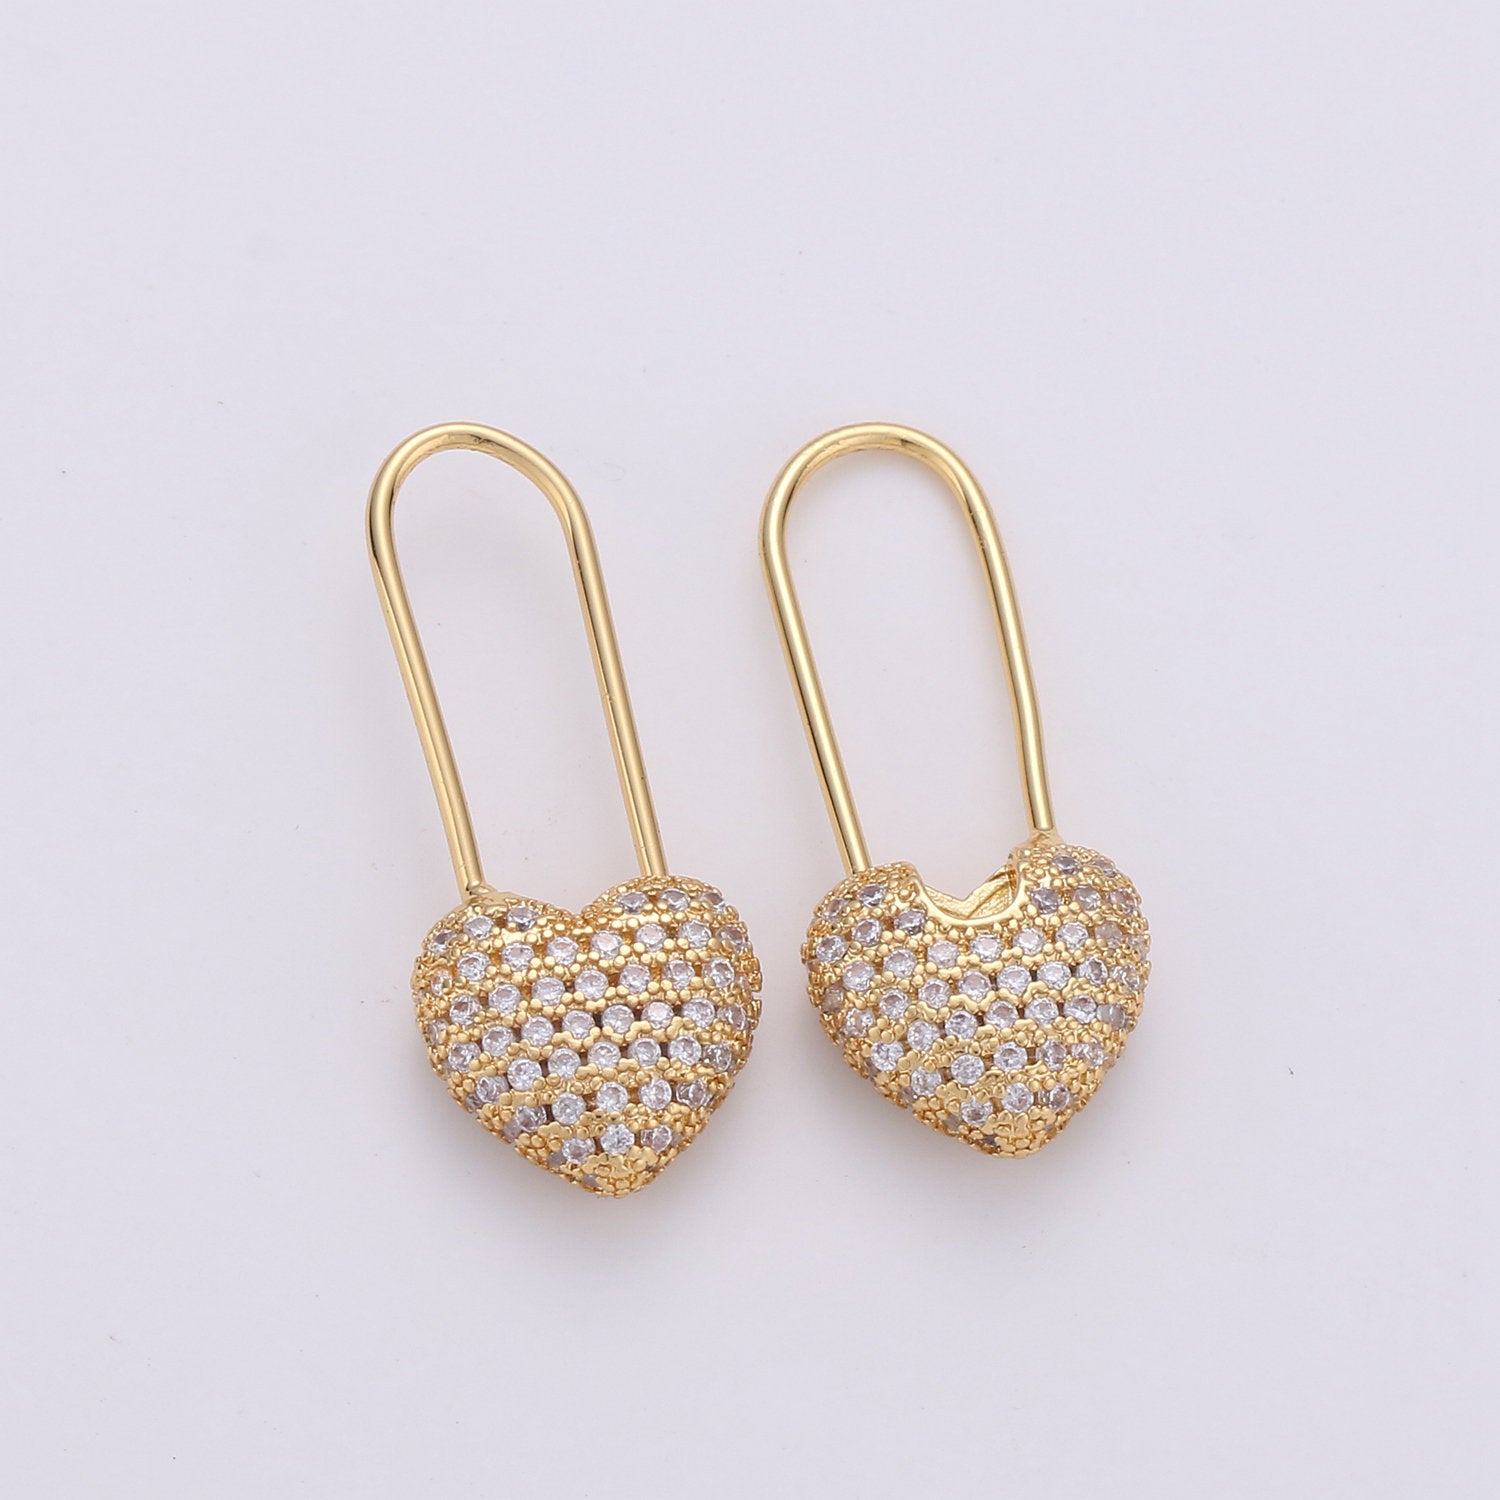 1 Pair Gold Heart earrings Pin earrings Heart jewelry Unique earrings Unique jewelry Gold earrings Dainty earrings Delicate Earrings - DLUXCA